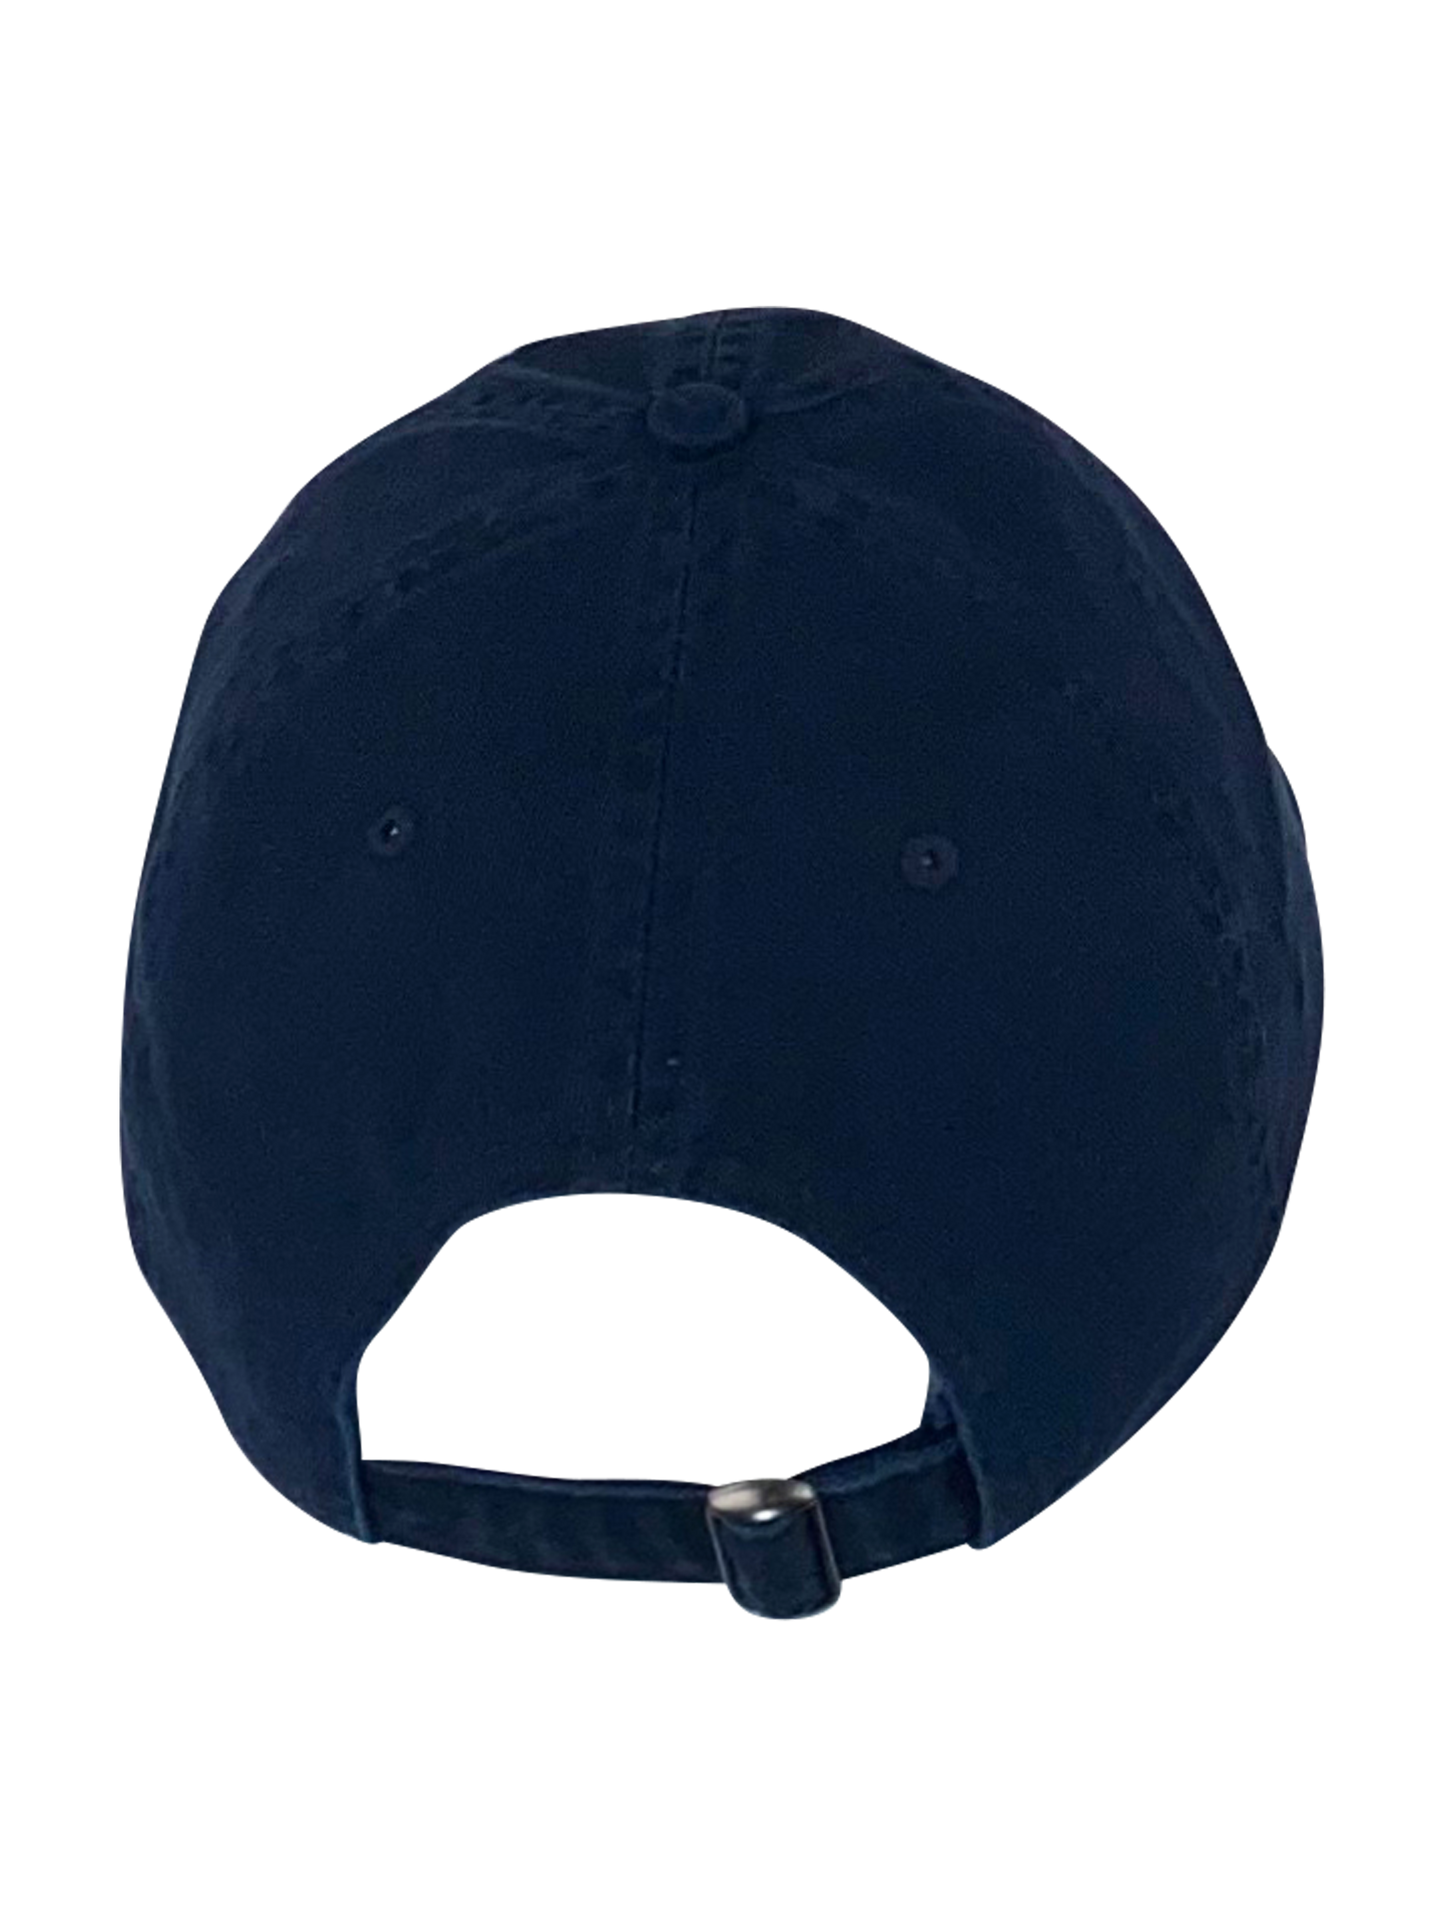 Wood Wood Cap "Low Profile" - Navy,W.W. Stick in weiß auf der Frontseite, gebogener Schirm Marineblau